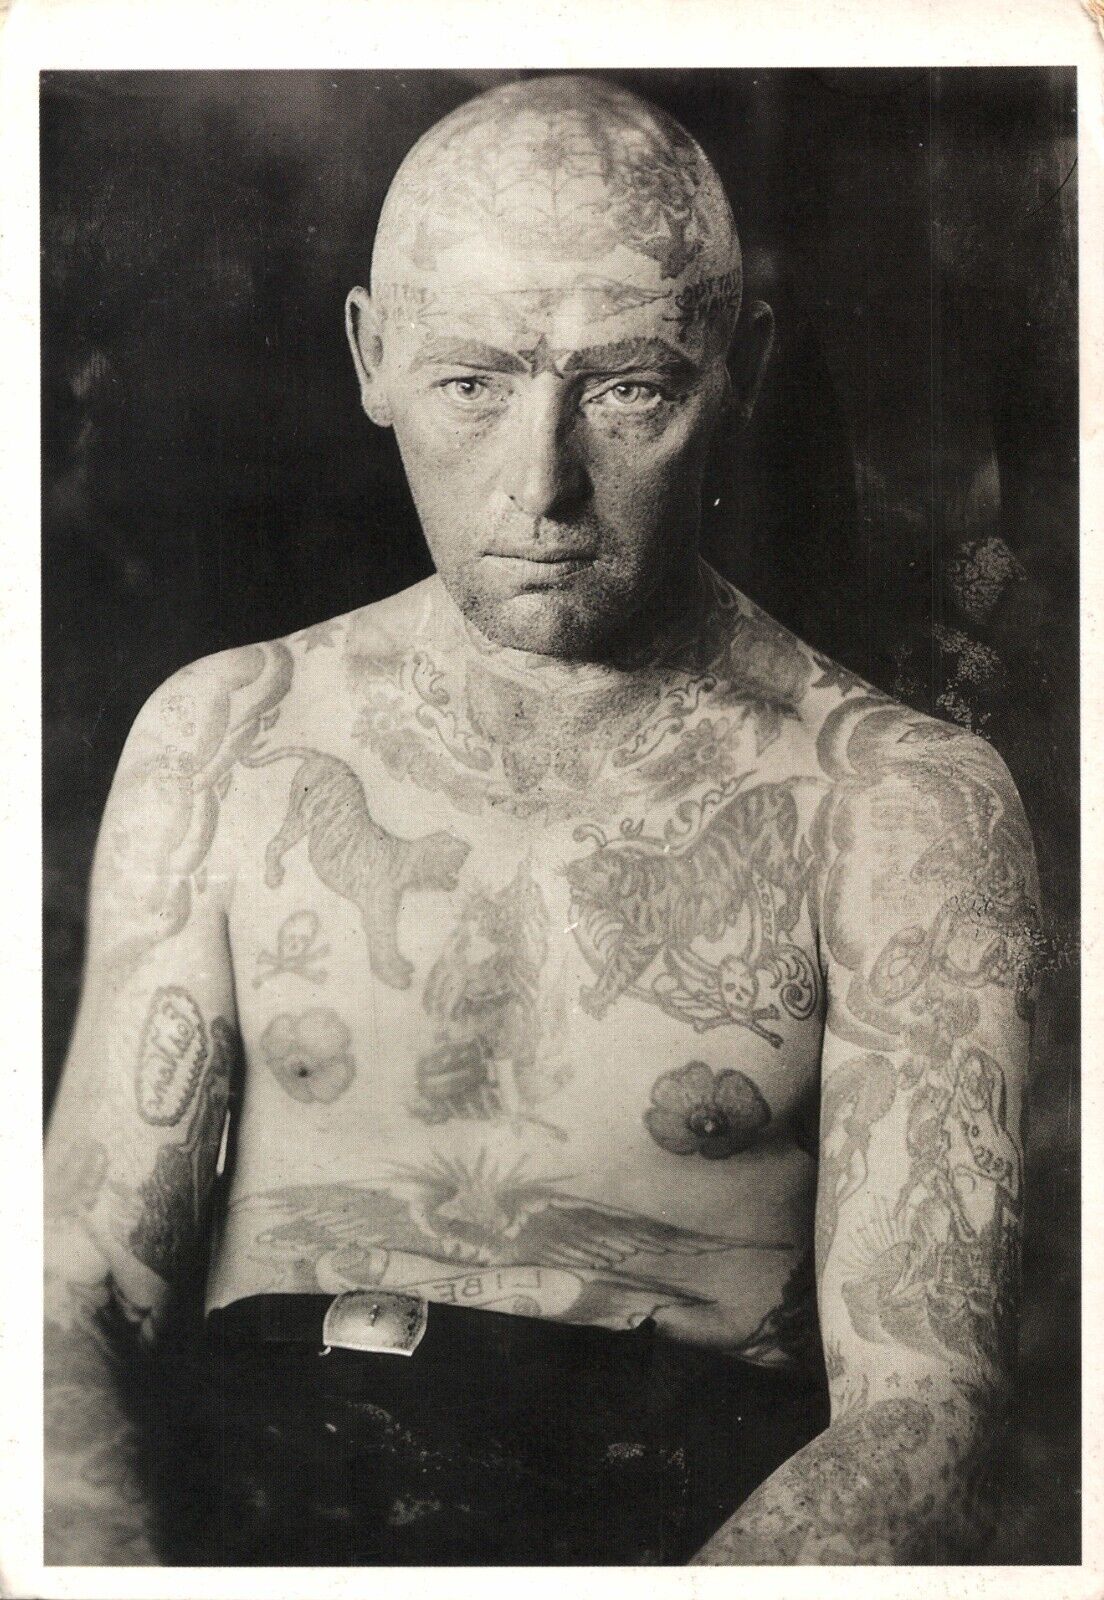 American Man Romper Stomper Tigers Animals Tattoo 1930s Photo on 1996 Postcard